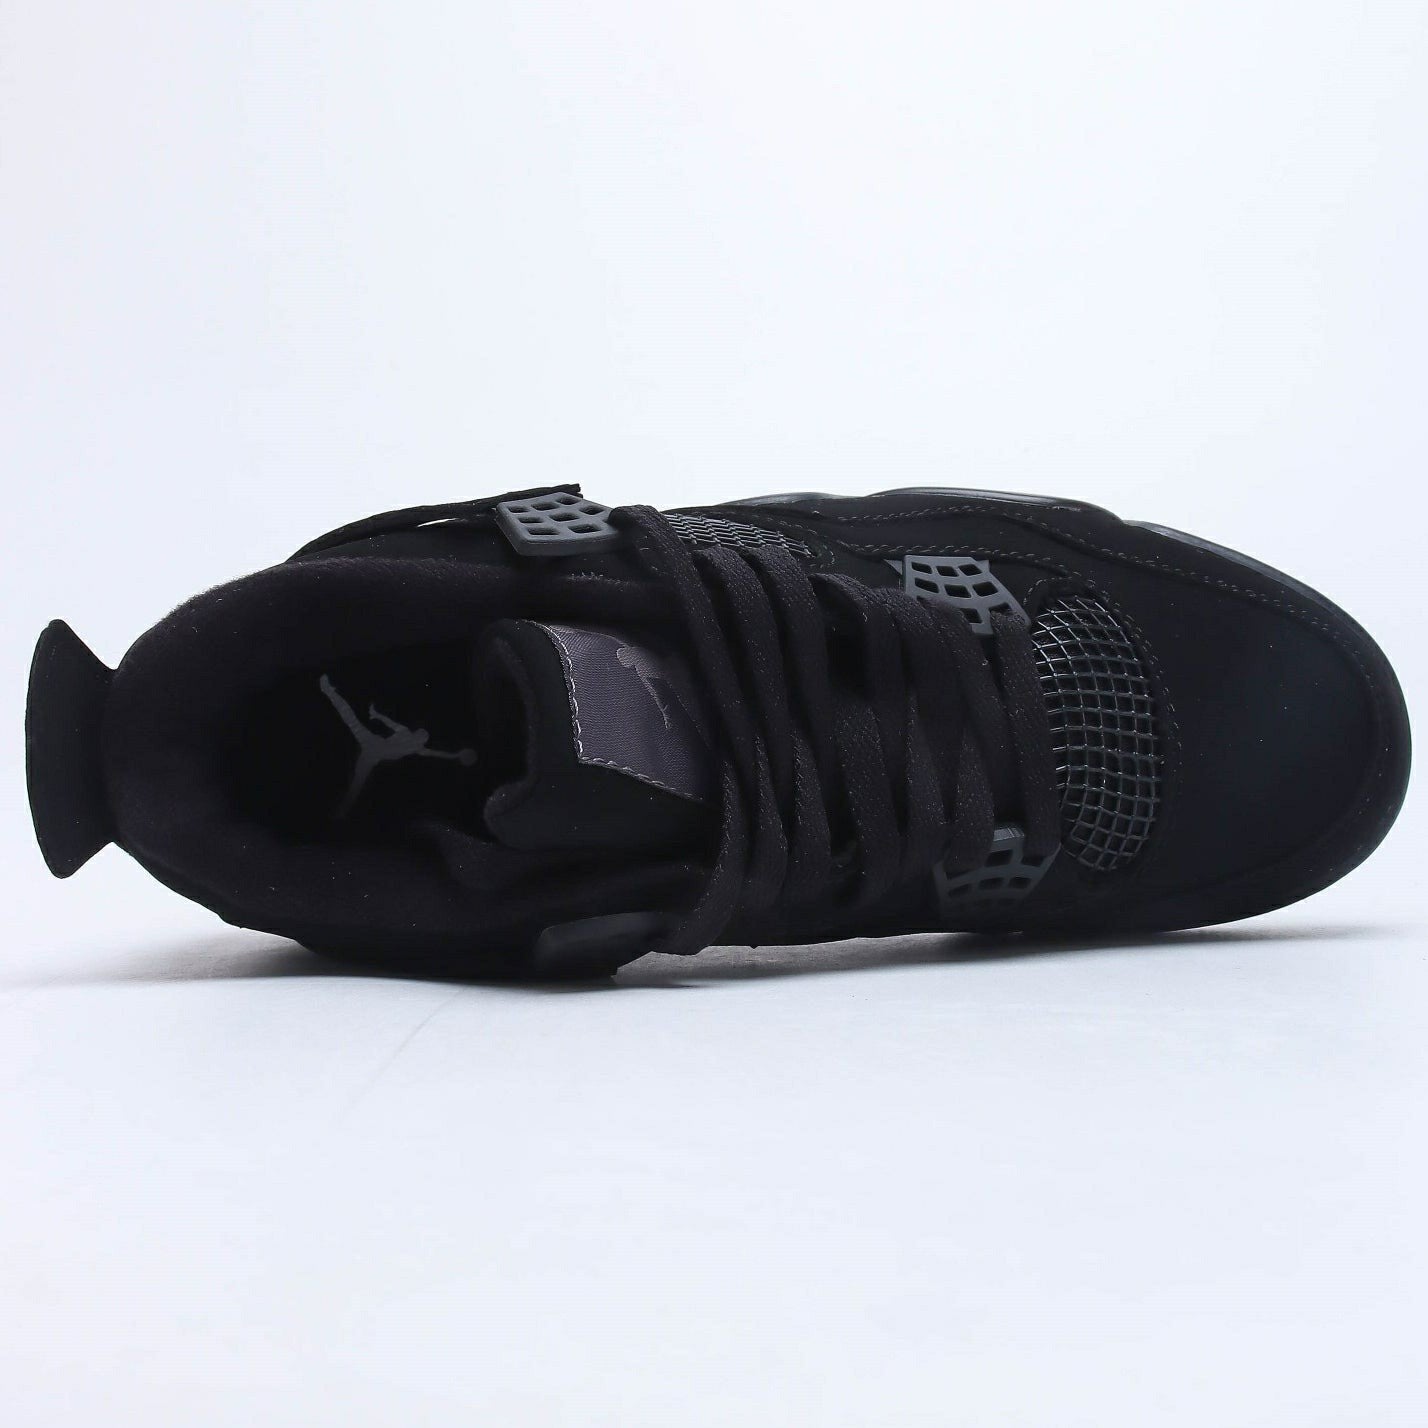 Nike Air Jordan 4 Retro Black Cat Sneakers Shoes